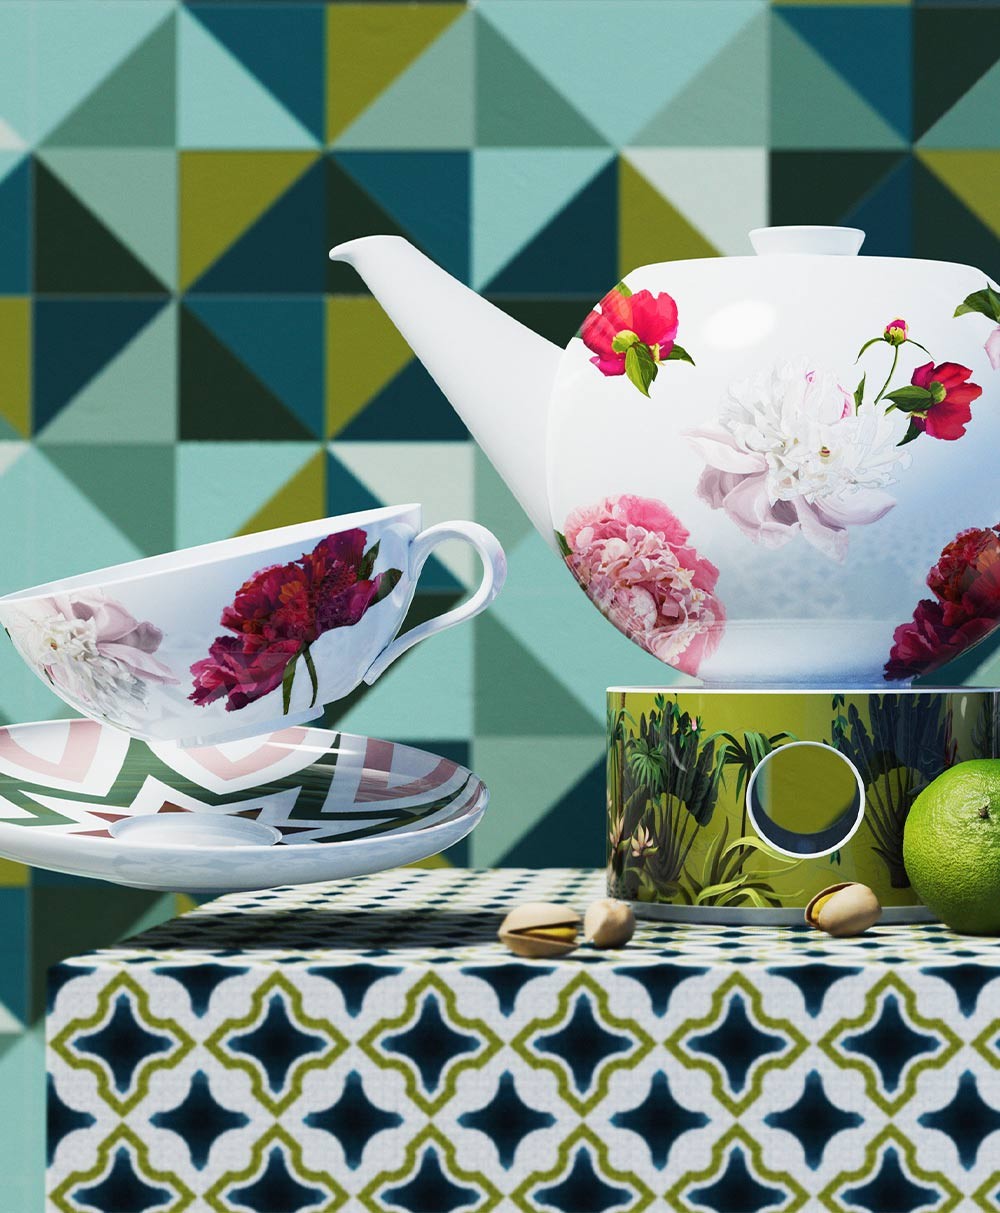 Moodbild, das die Teekanne mit Stövchen, sowie eine Teetasse mit Unterasse zeigt, die dekorativ vor einem geometrischen Hintergrund in Grüntönen arrangiert wurden